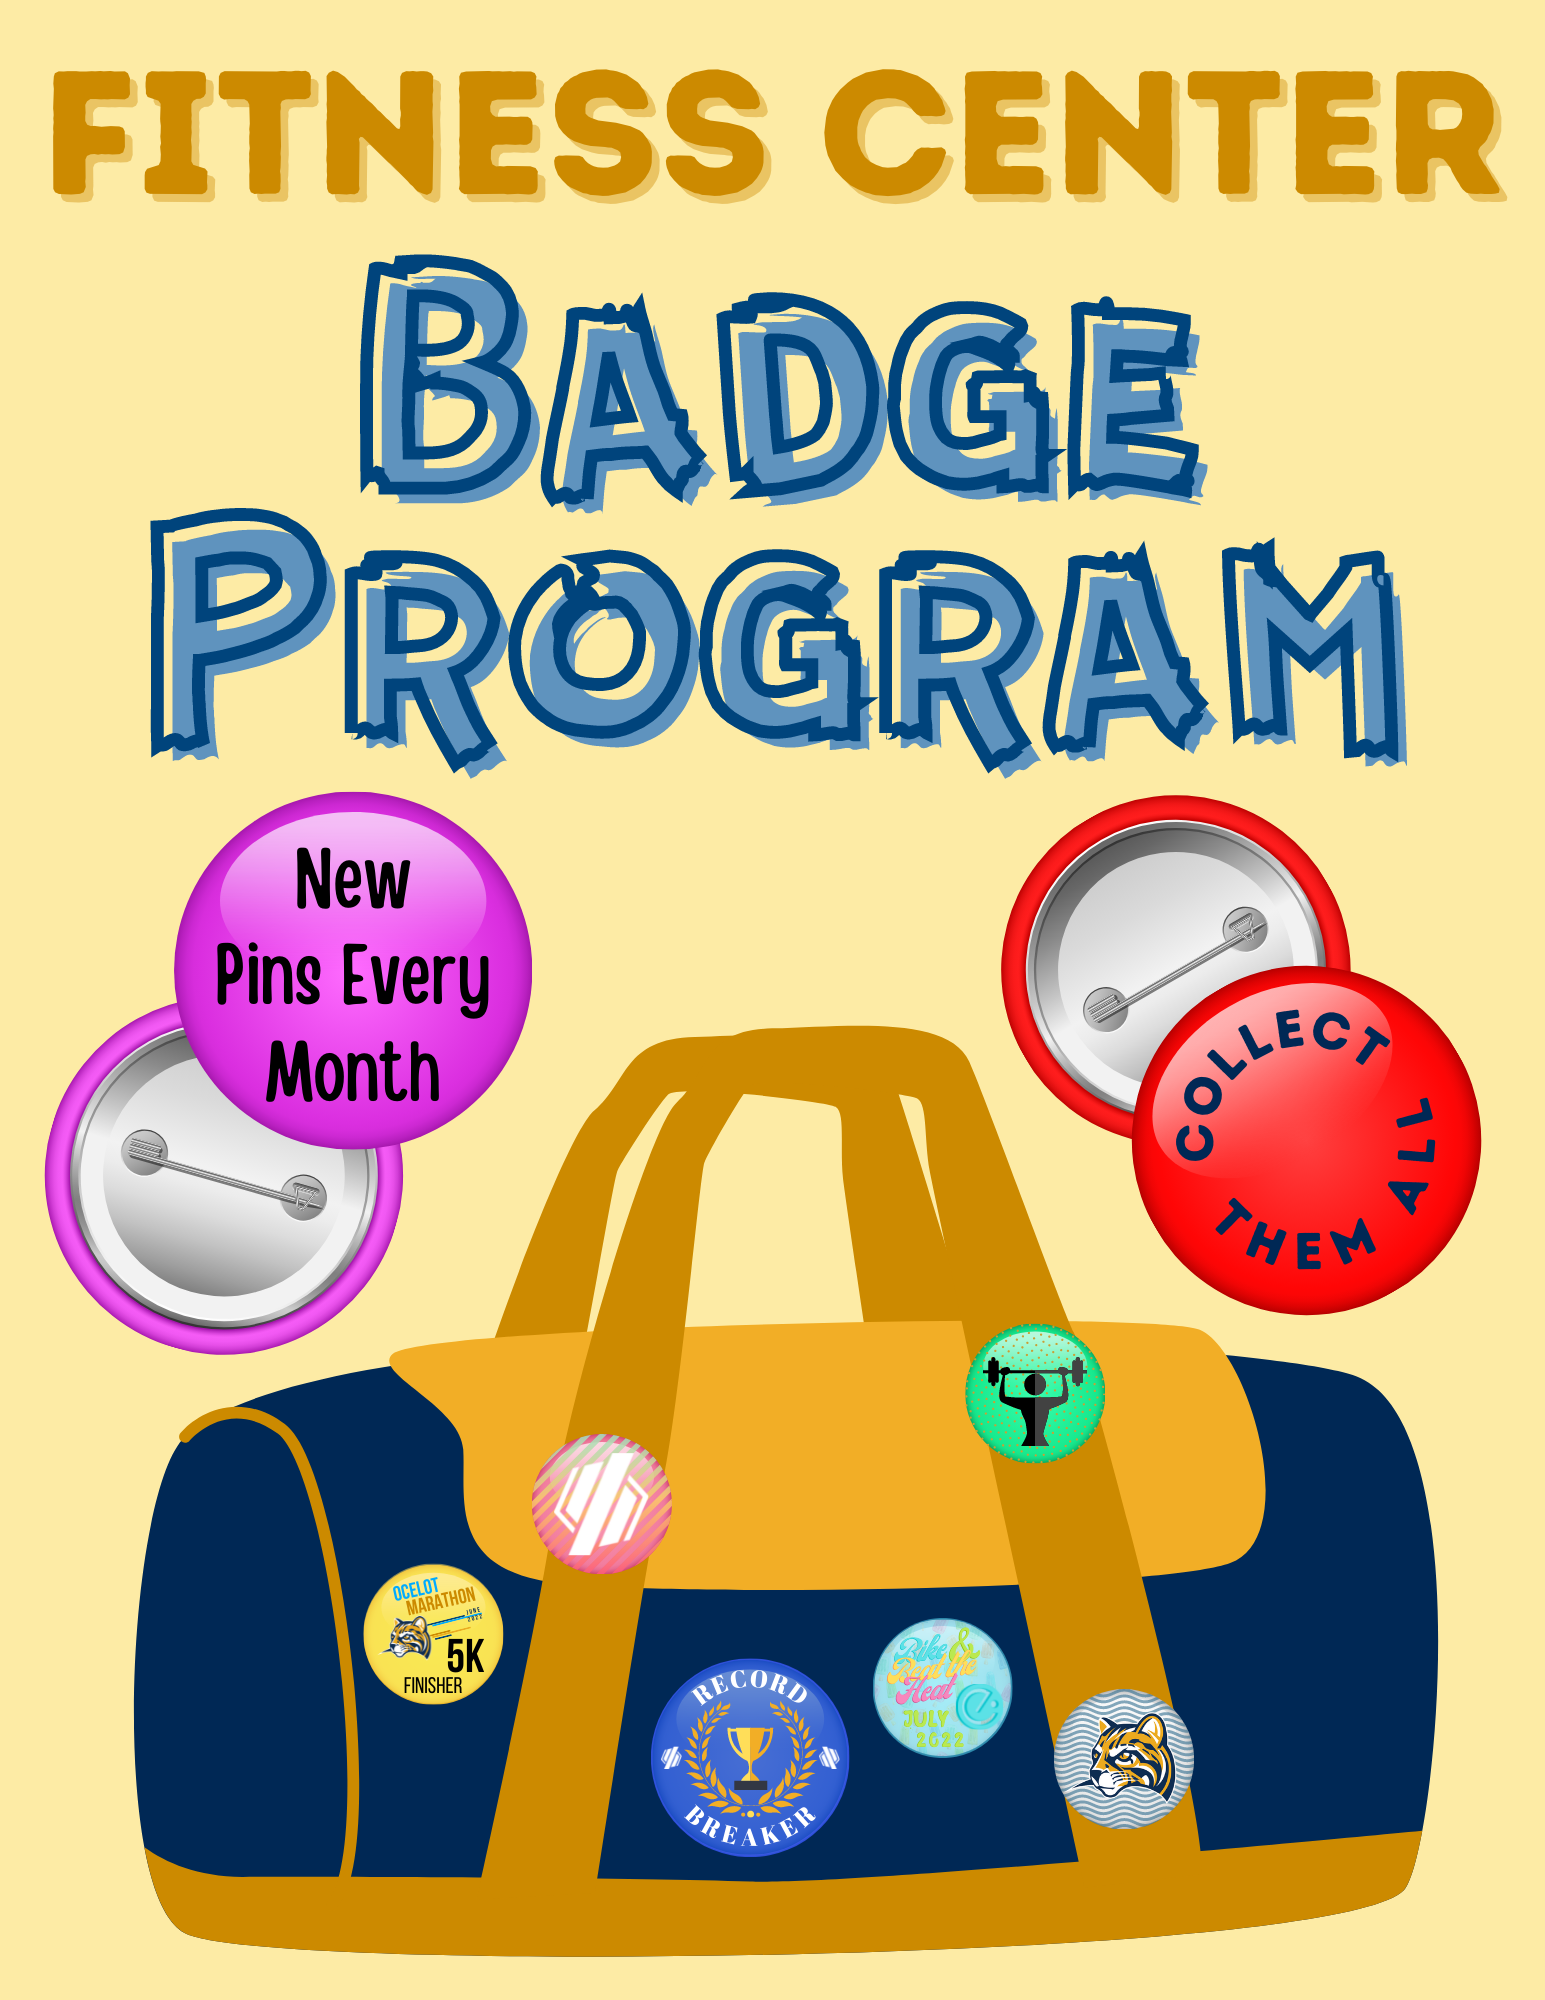 Fitness Center Badge Program